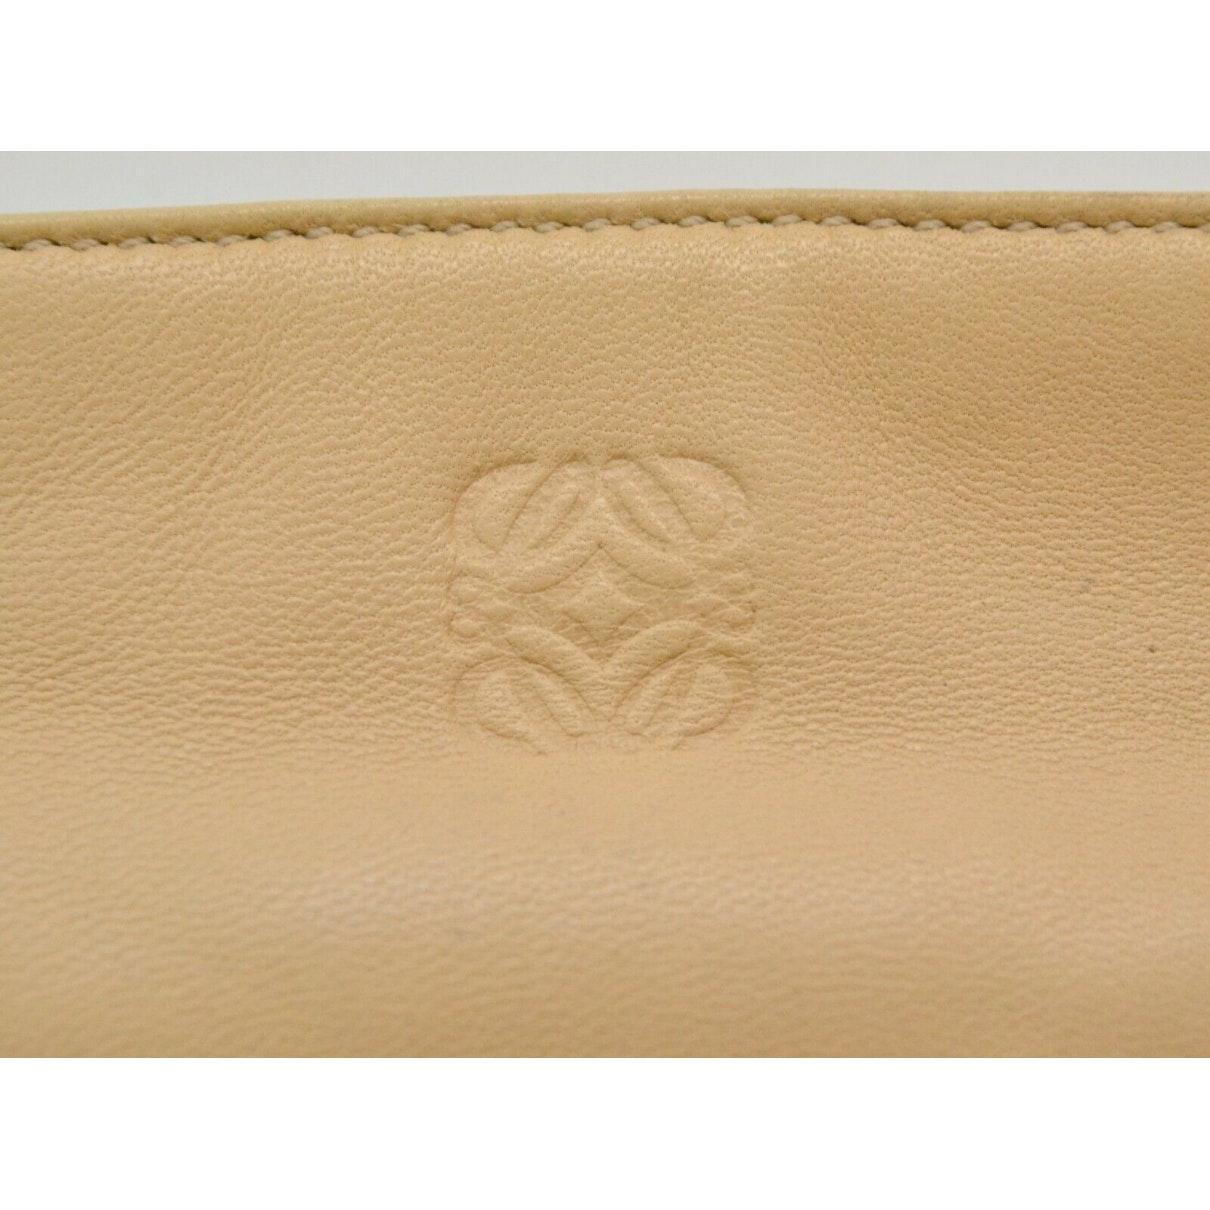 Loewe Leather Handbag in Beige (Natural) - Lyst